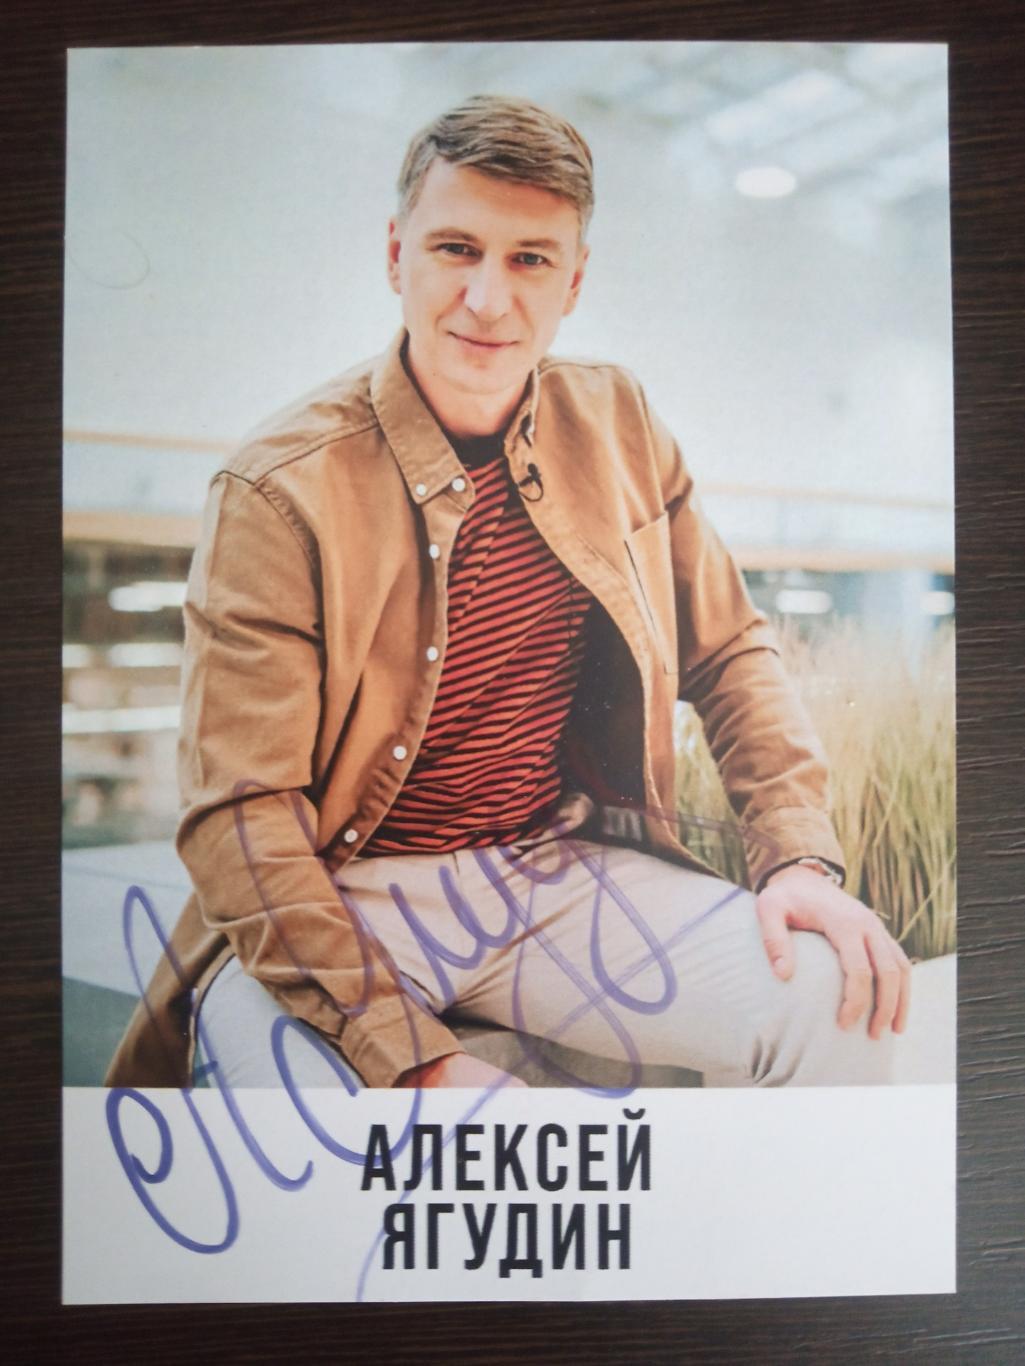 Автограф Алексея Ягудина на оригинальной редкой карточке